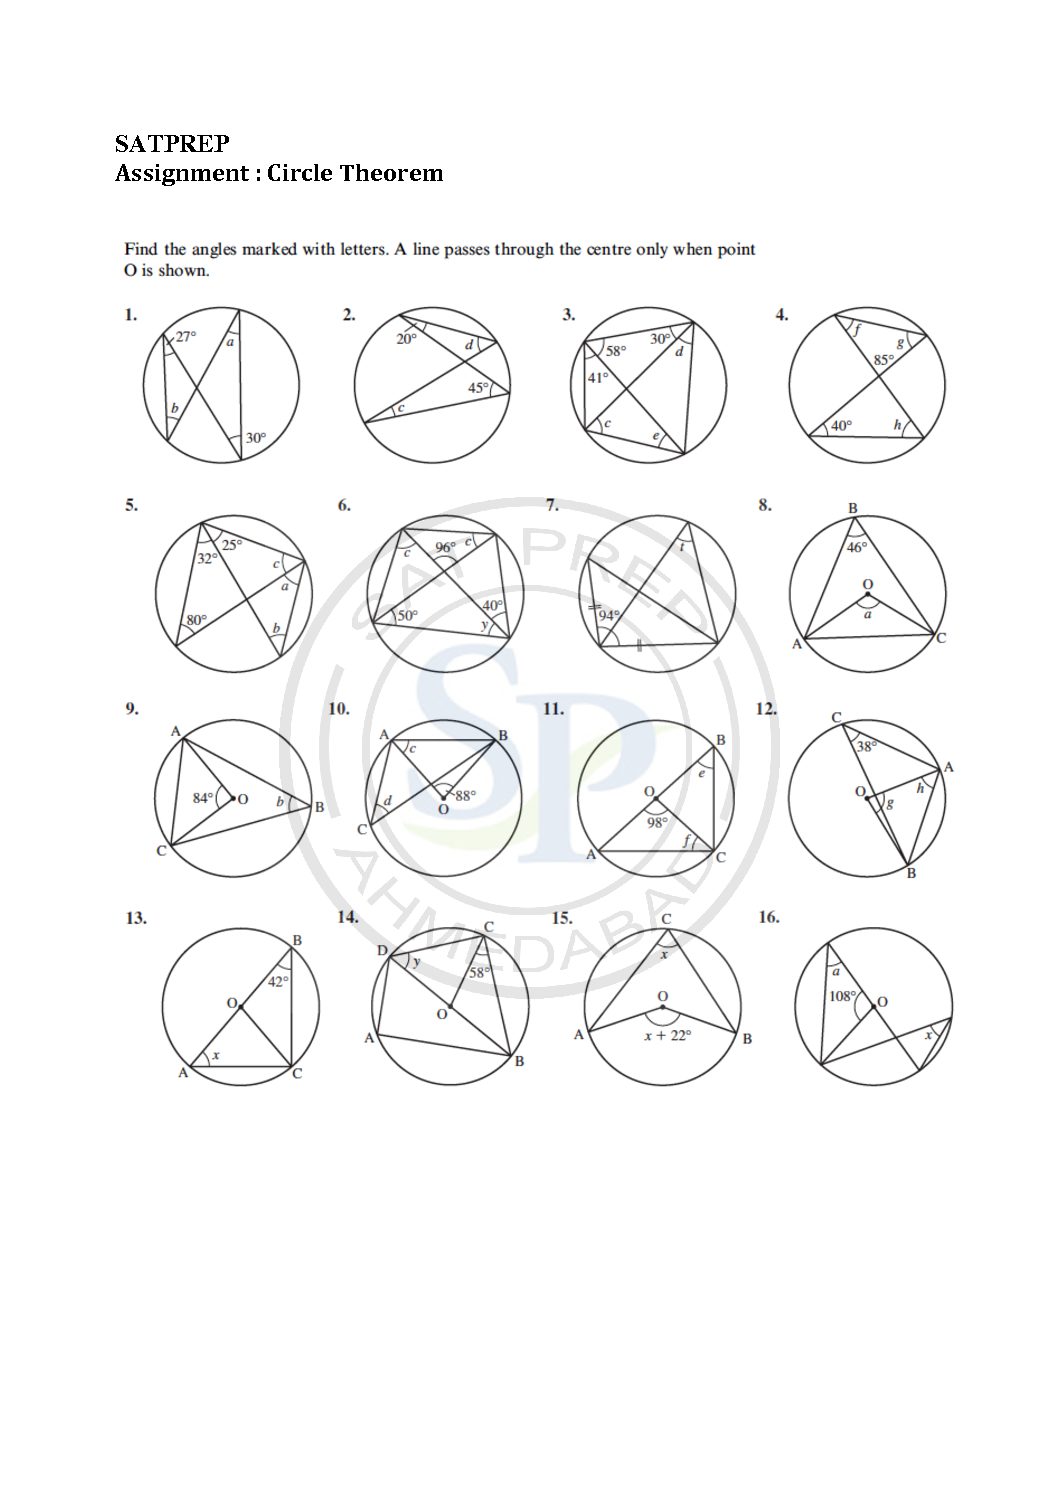 Circle Theorem Proof Worksheet